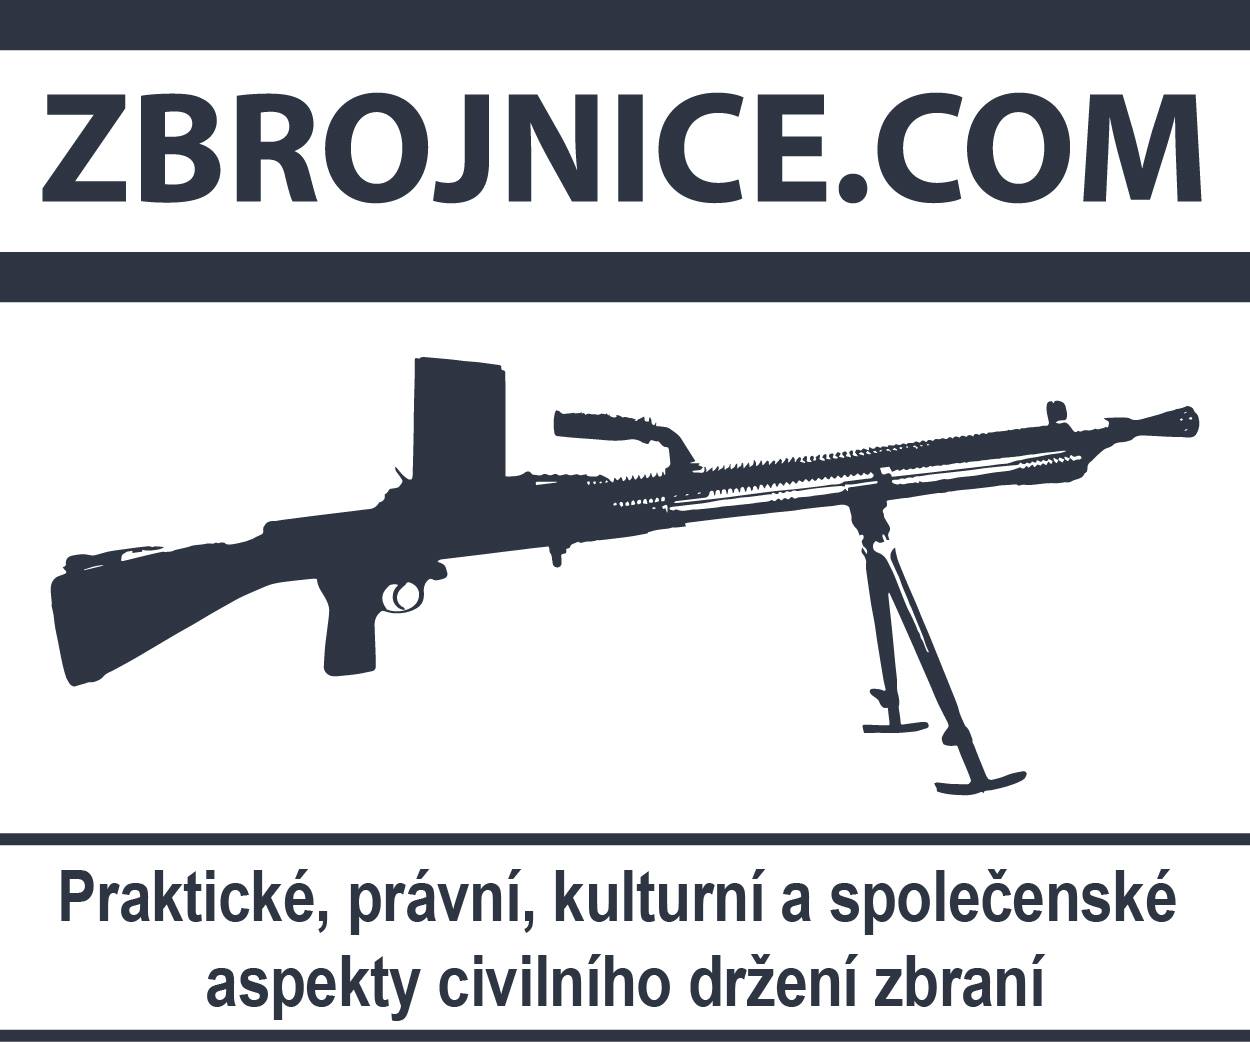 Zbrojnice.com - praktické, právní, kulturní a společnské aspekty civilního držení zbraní.